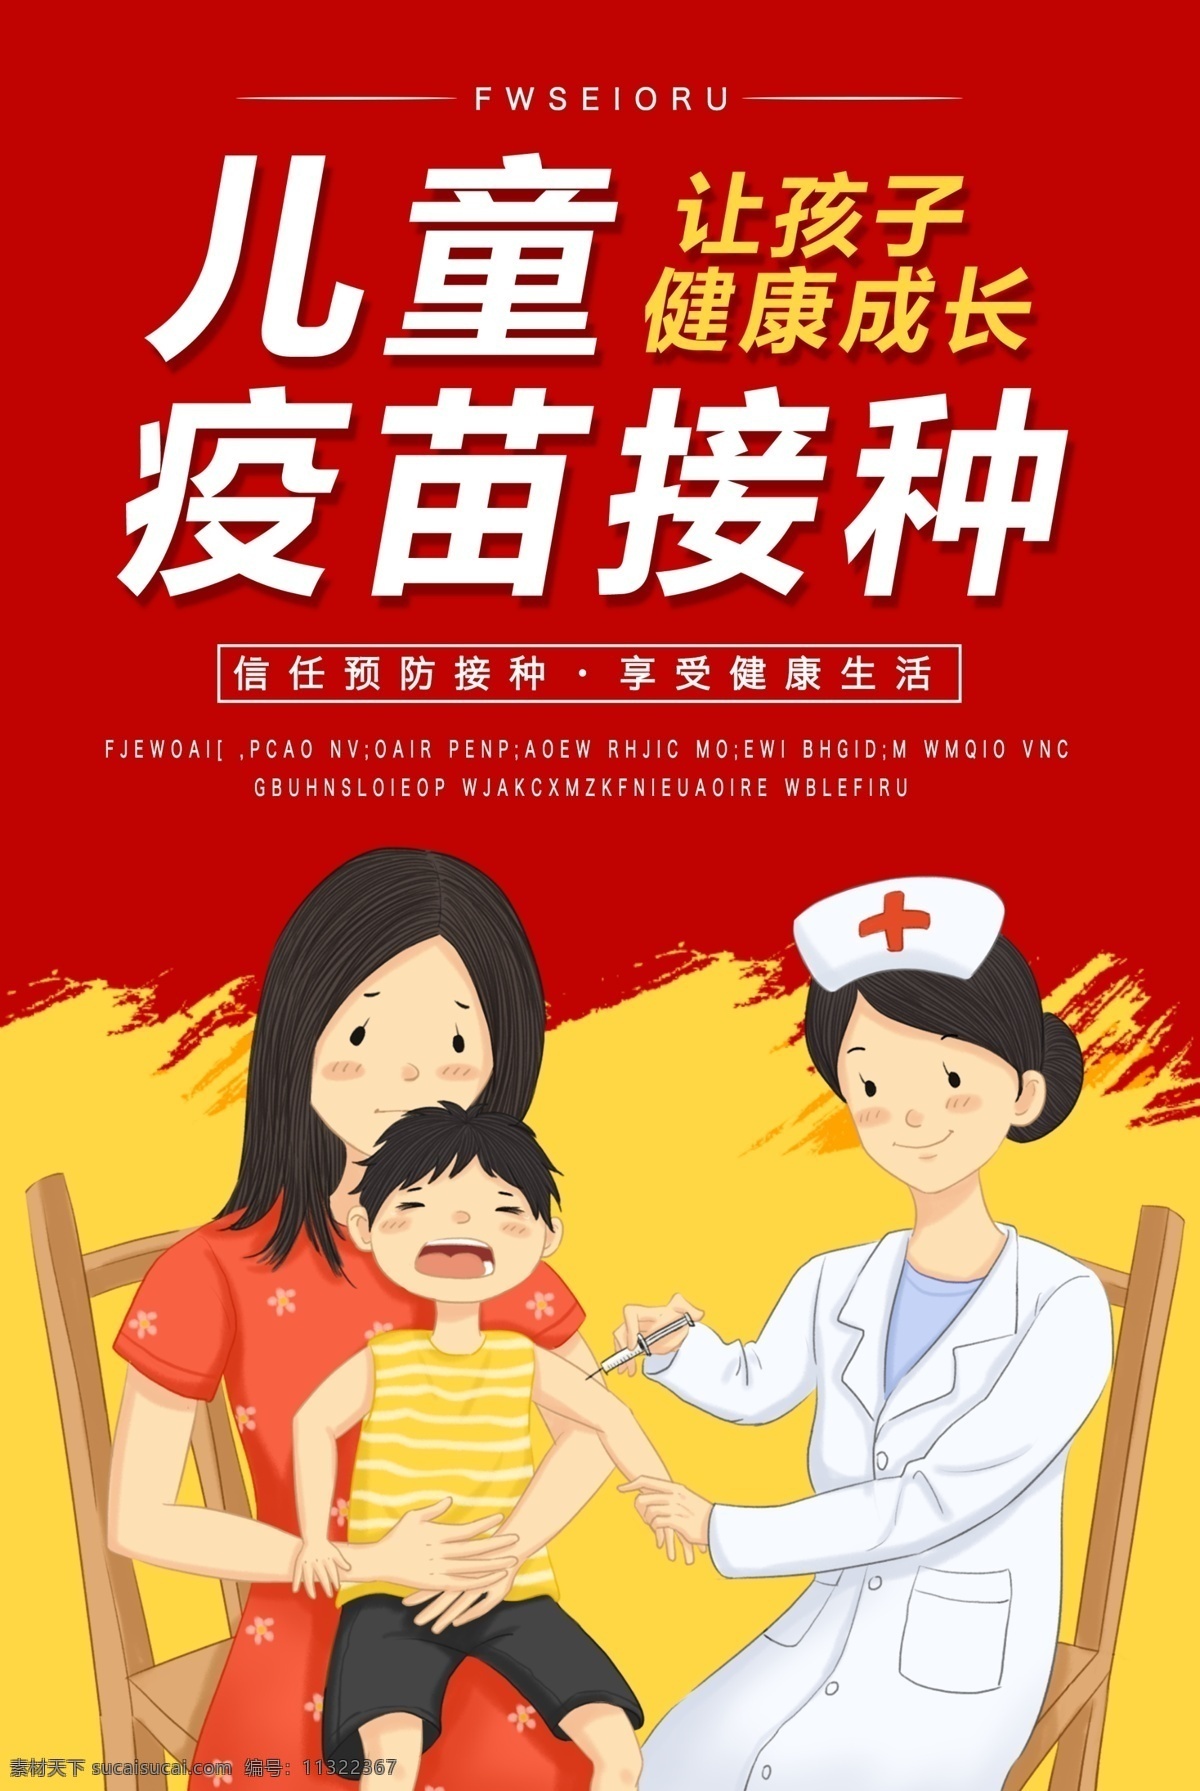 儿童 疫苗 接种 宣传海报 儿童疫苗 疫苗接种 治疗 医疗 打针 健康 检查 红色 卡通 海报